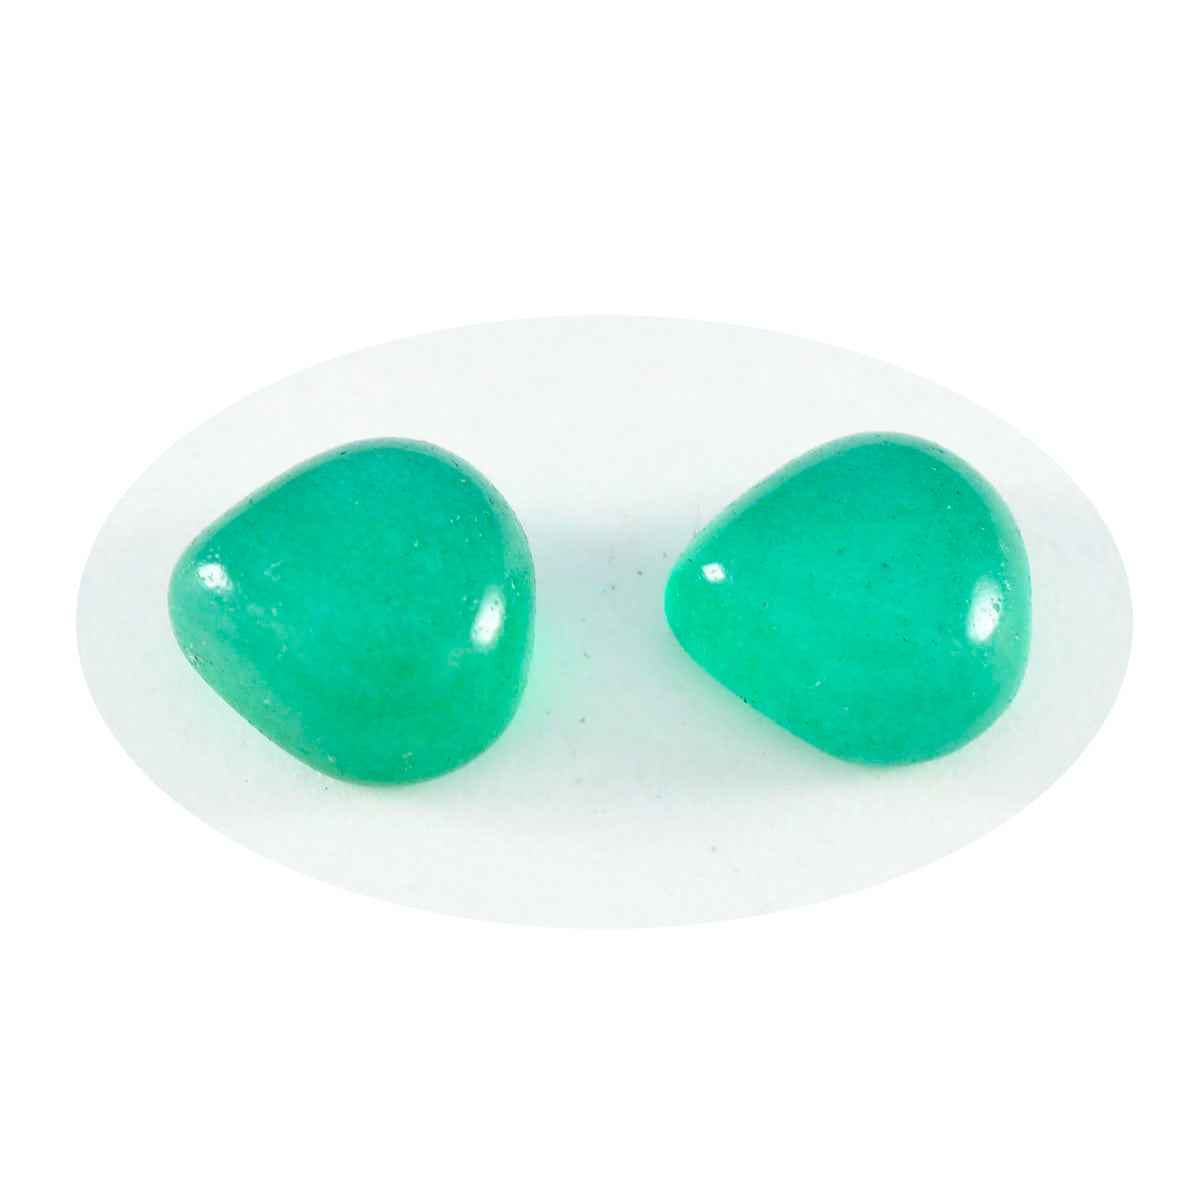 Riyogems 1 Stück grüner Onyx-Cabochon, 8 x 8 mm, Herzform, hochwertiger Edelstein